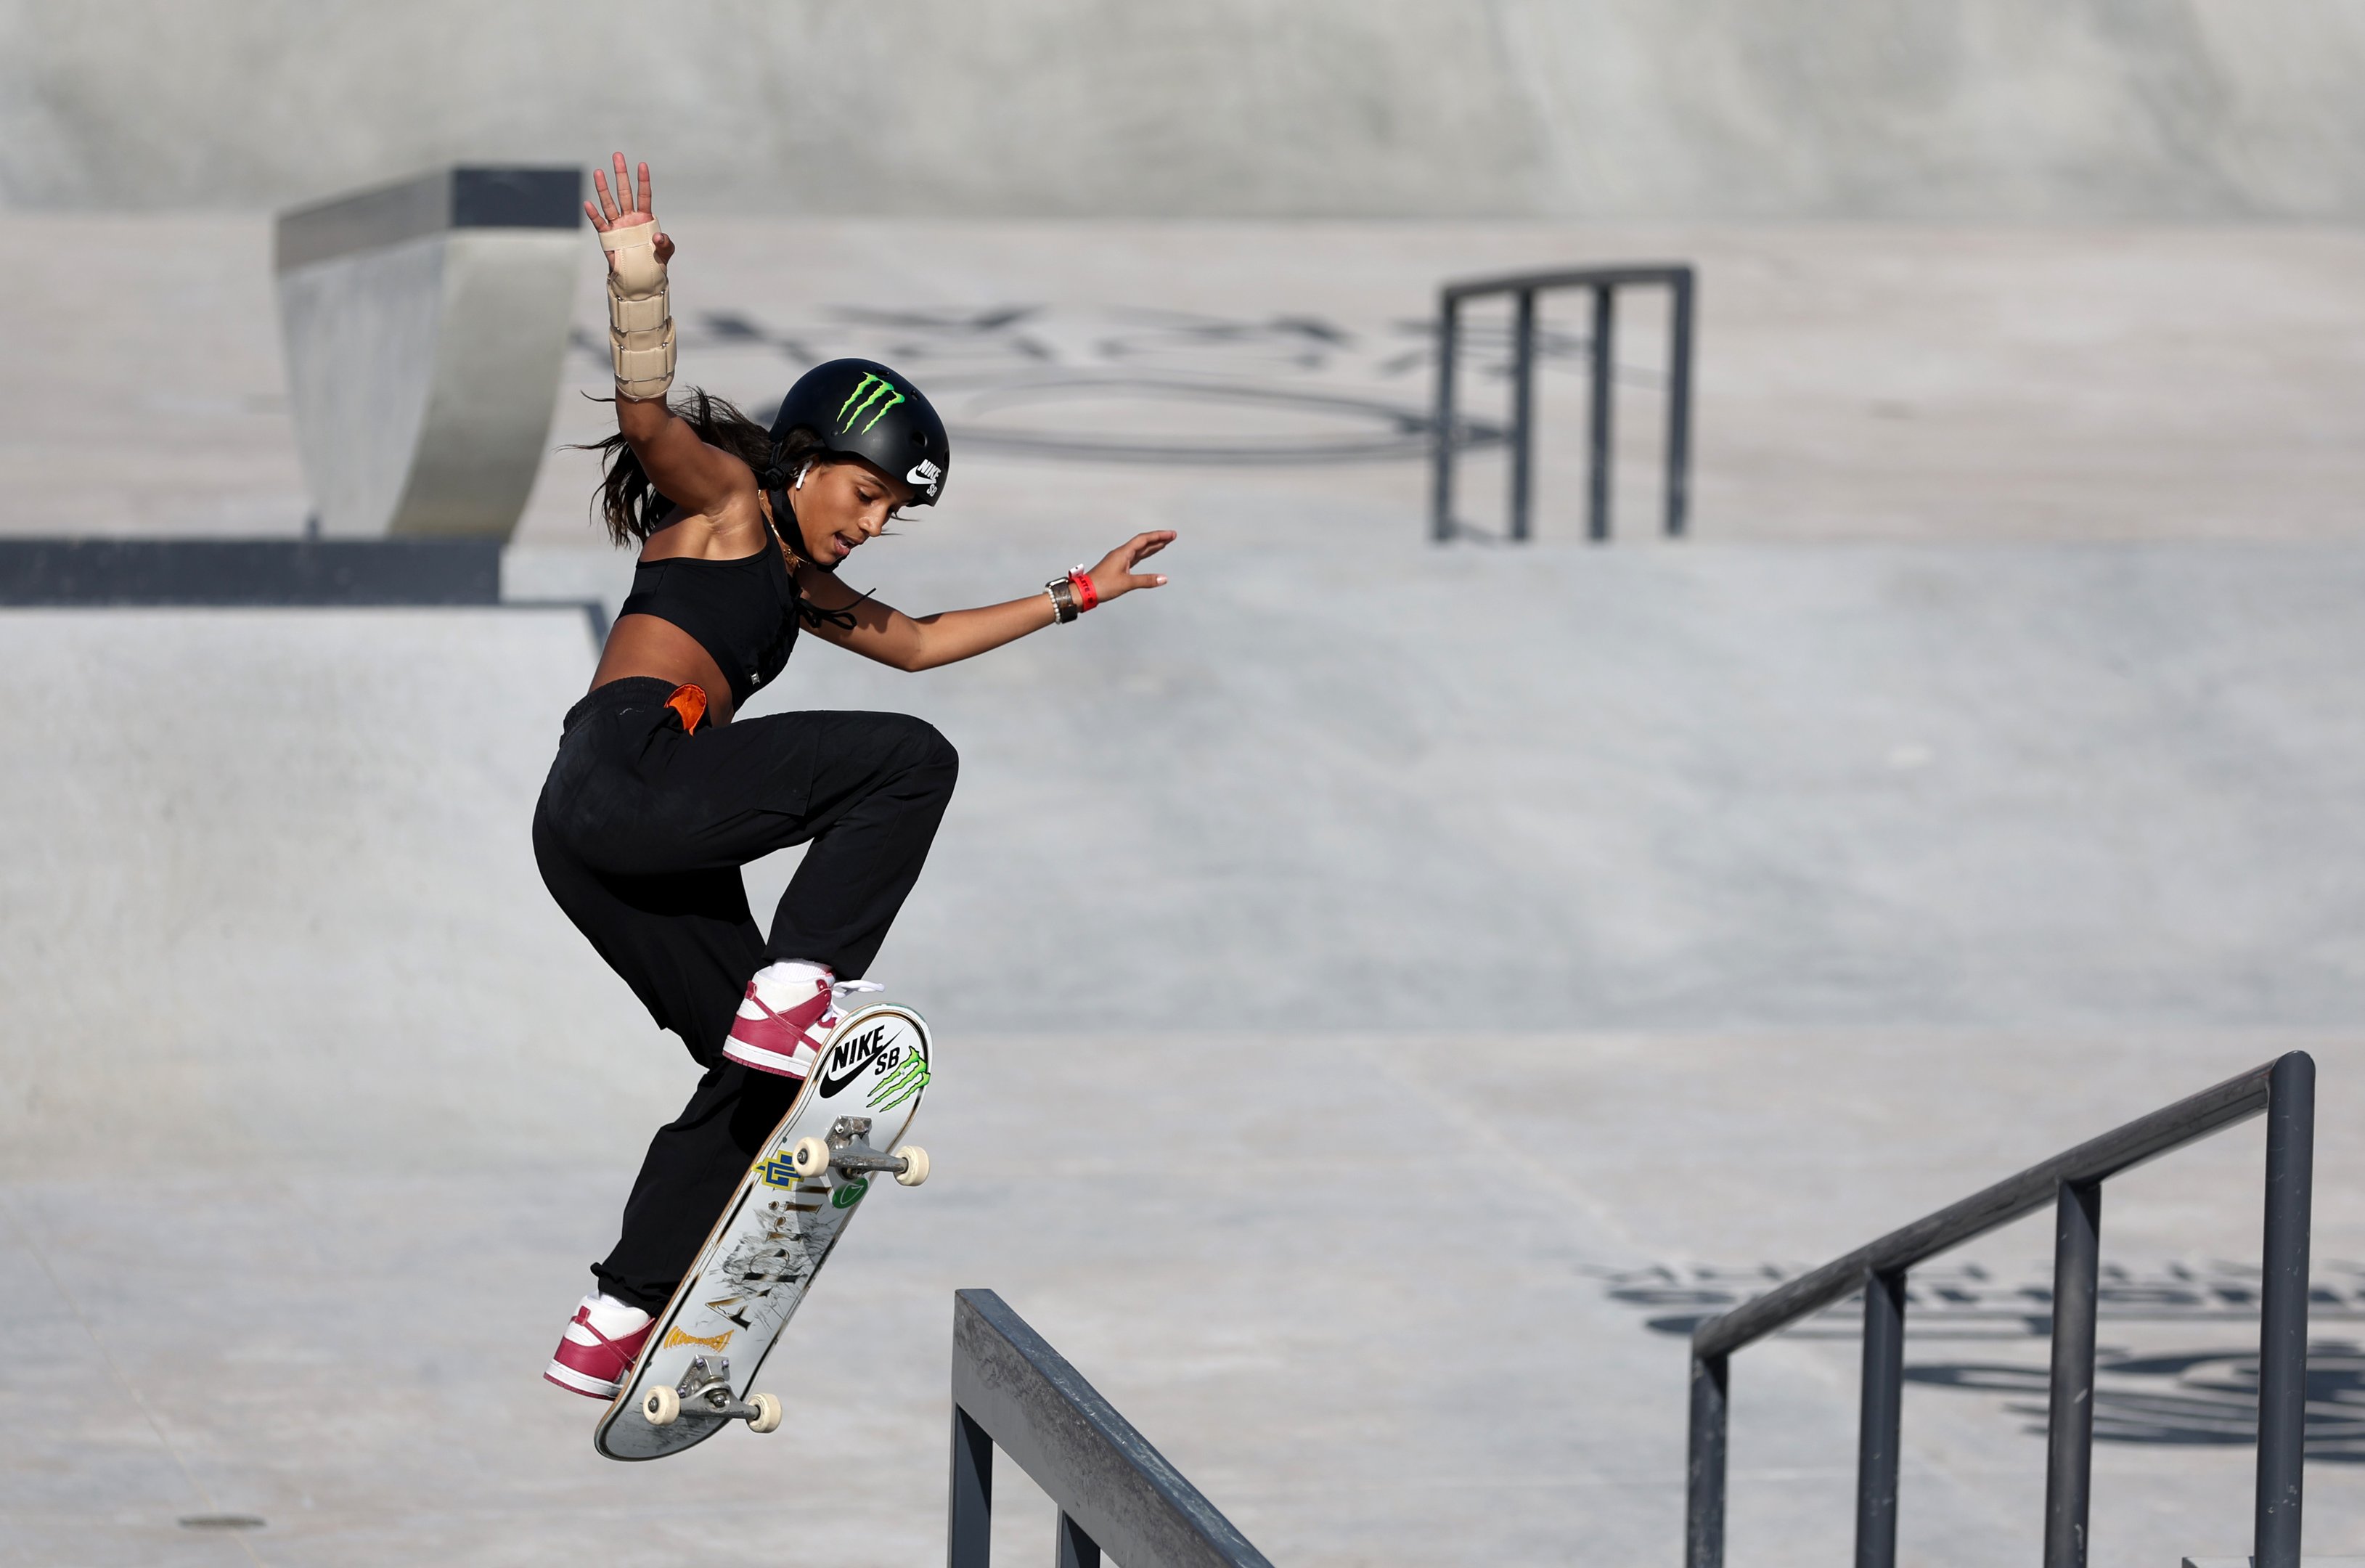 Rayssa Leal, do Brasil, compete na semifinal feminina de street durante o Campeonato Mundial de Skate de Street e Park de Sharjah 2023, em 4 de fevereiro de 2023 em Sharjah, Emirados Árabes Unidos.